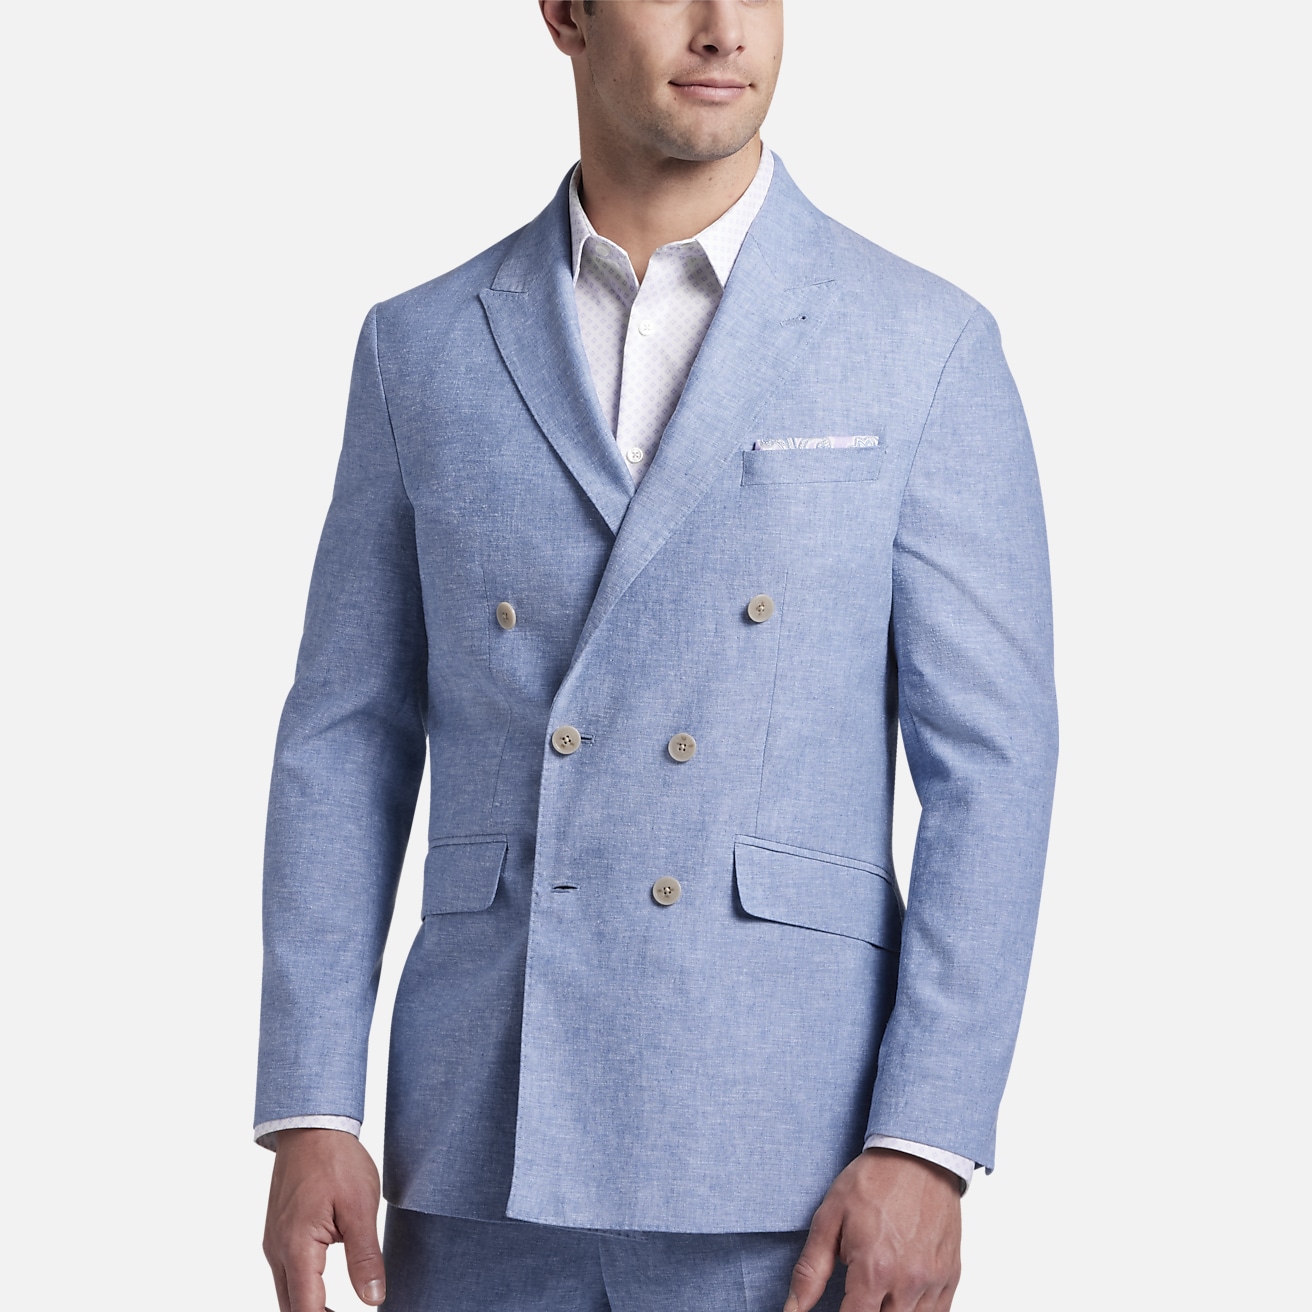 JOE Joseph Abboud Slim Fit Linen Blend Suit Separates Jacket, All Sale